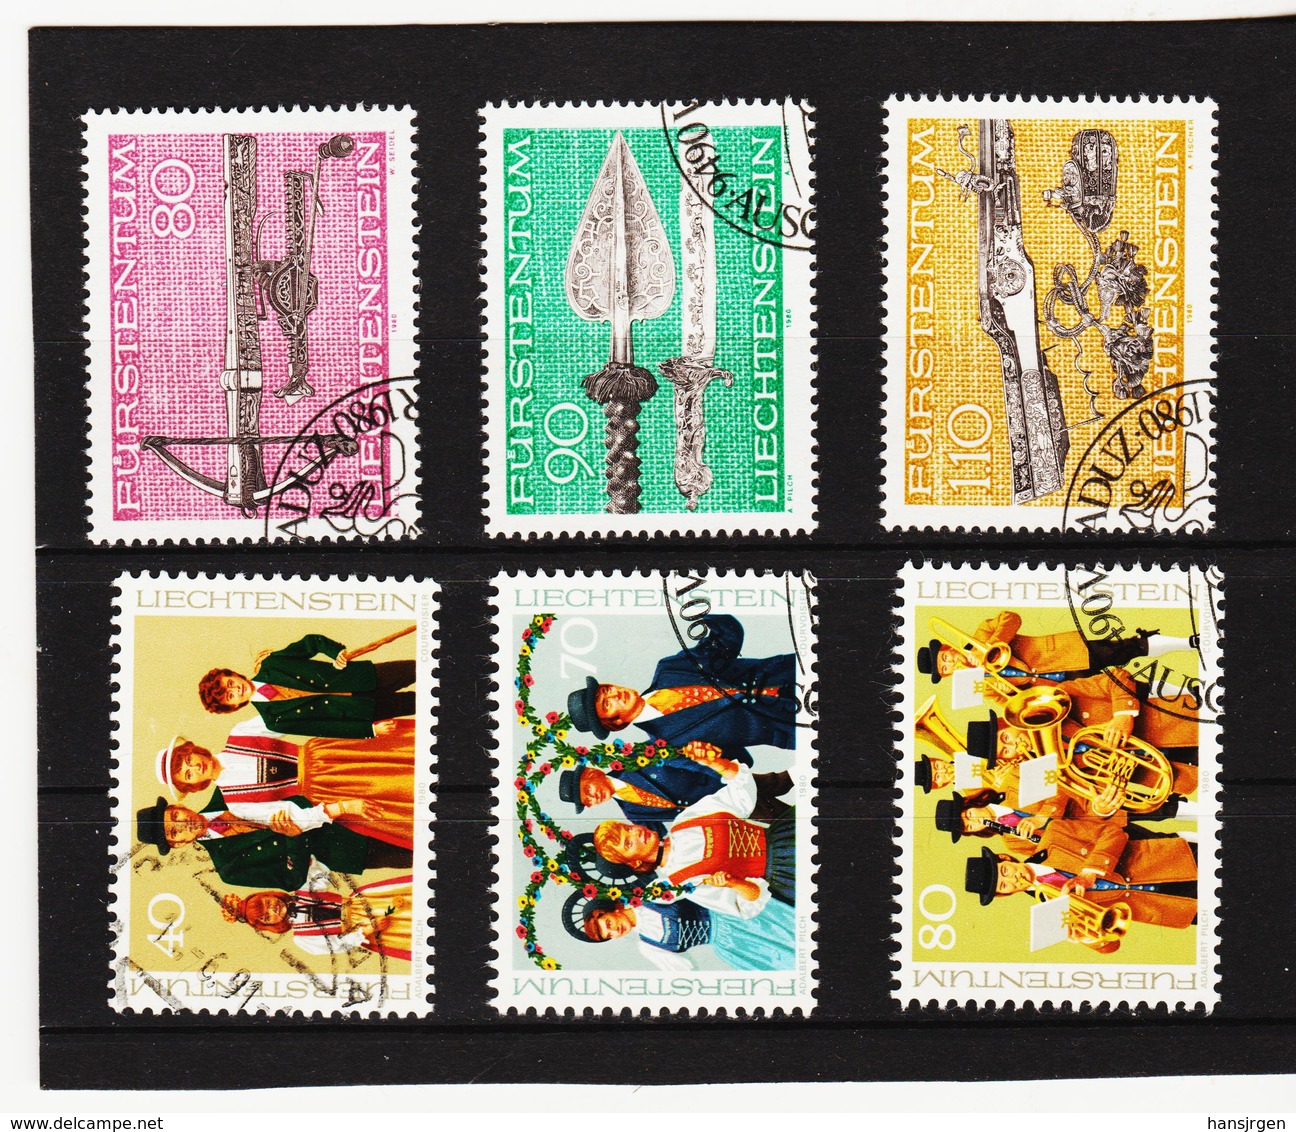 TNT307 LIECHTENSTEIN 1980 Michl 751/56 Used / Gestempelt SIEHE ABBILDUNG - Used Stamps